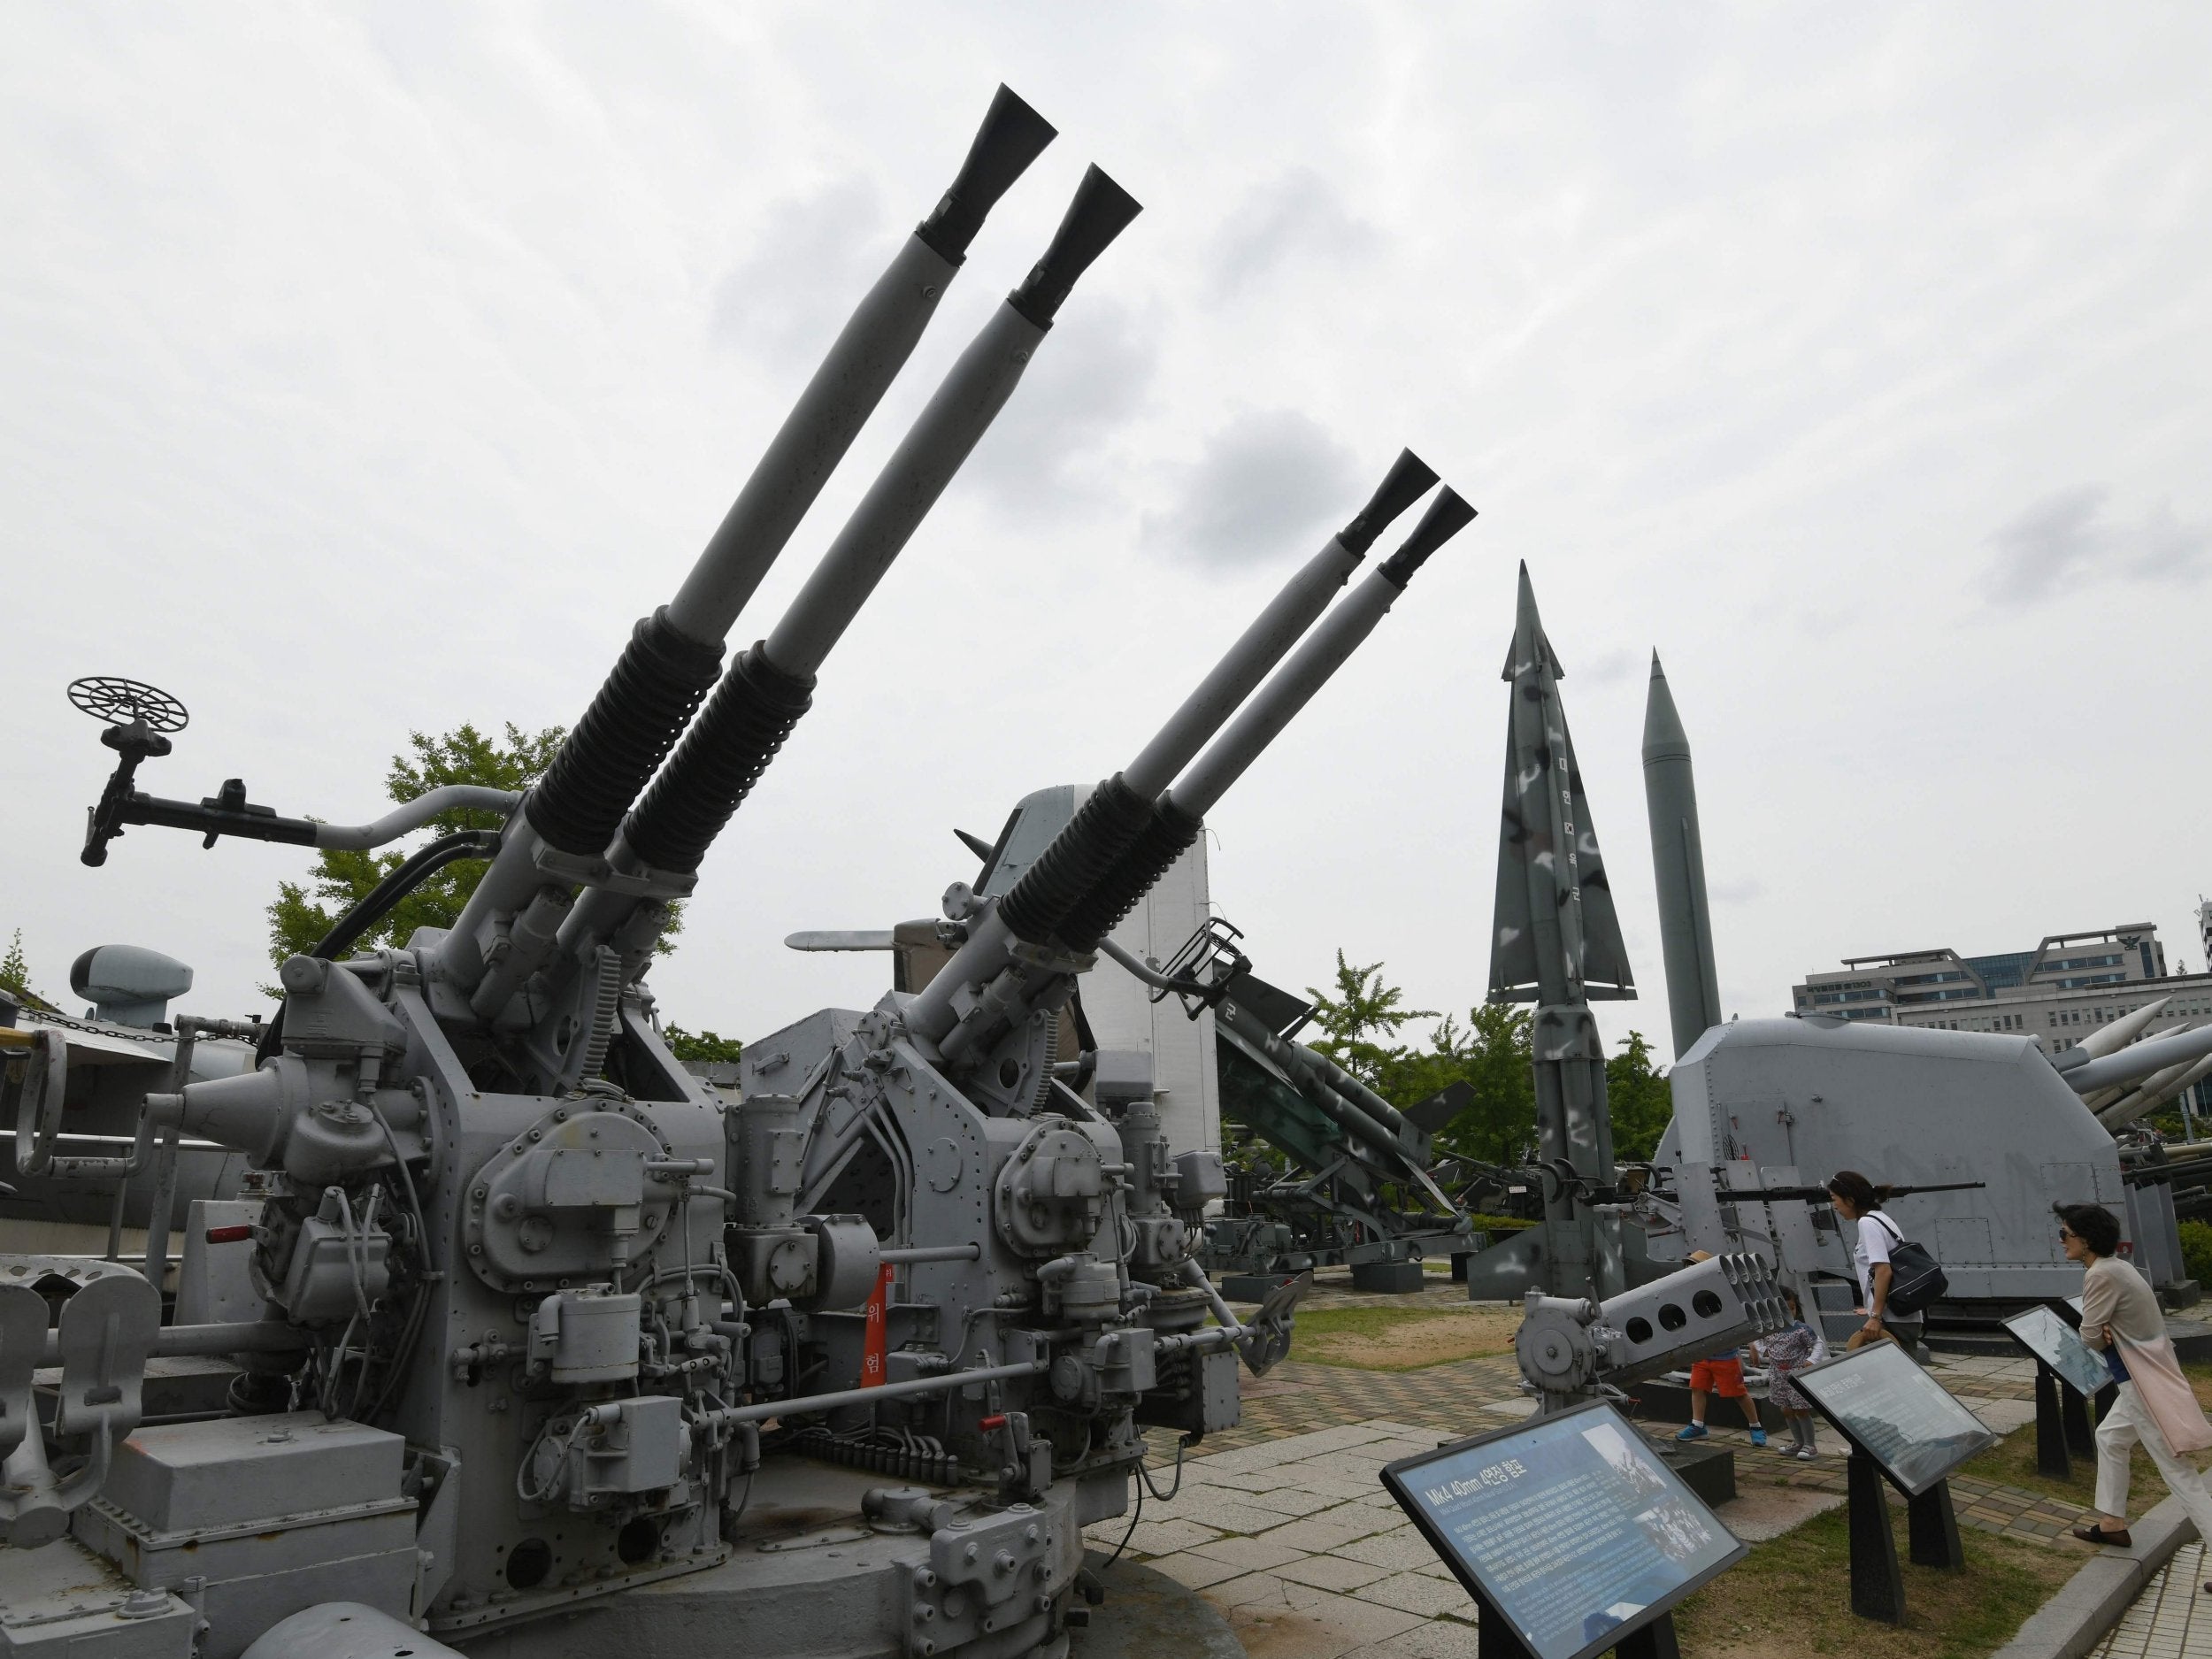 Visitors walk past weapons displayed at the Korean War Memorial in Seoul